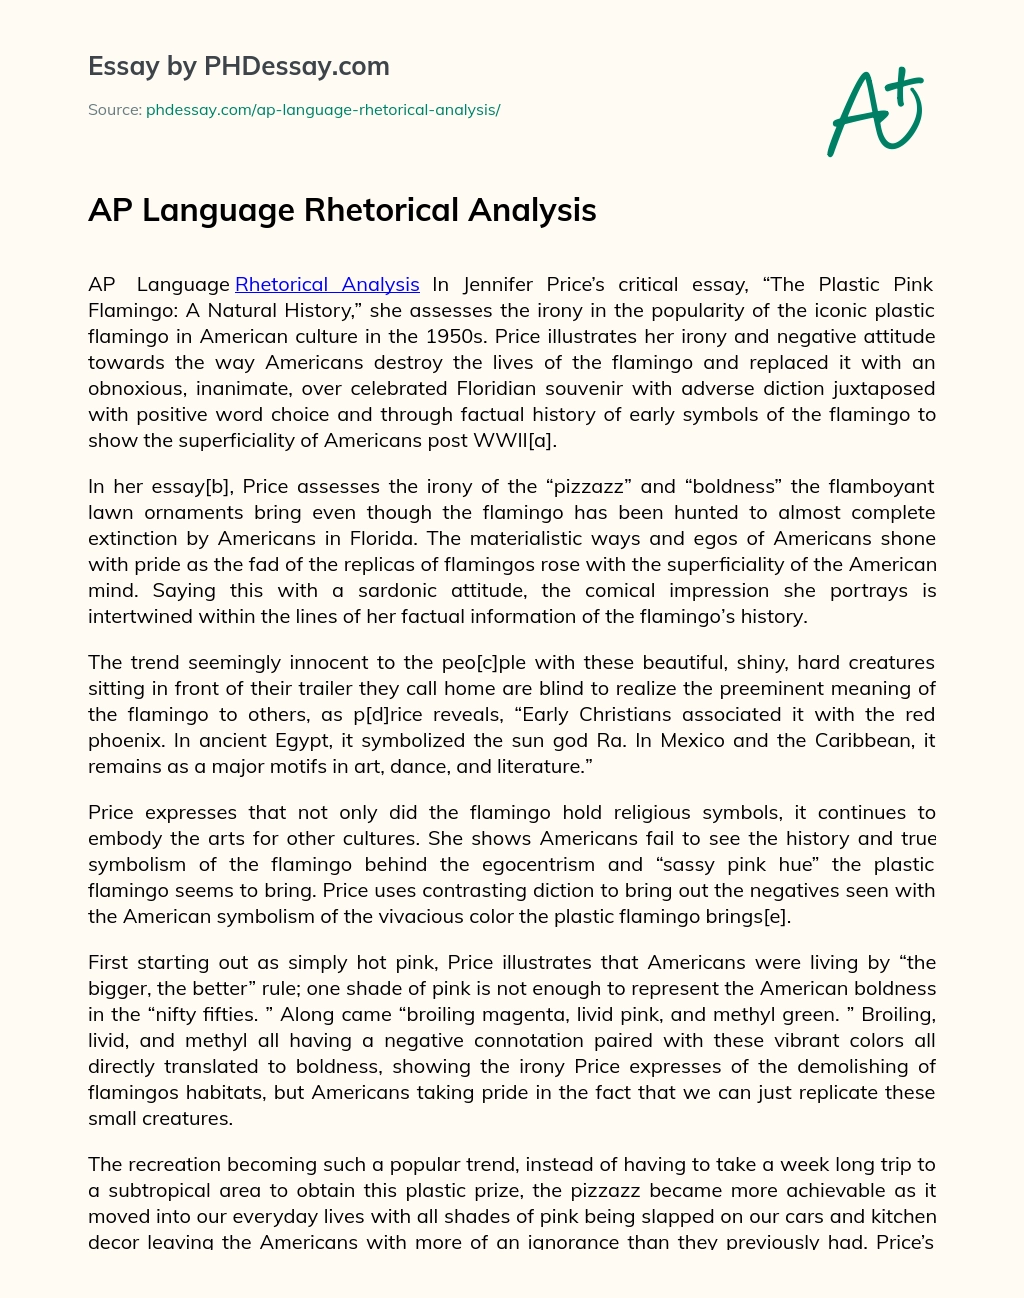 AP Language Rhetorical Analysis